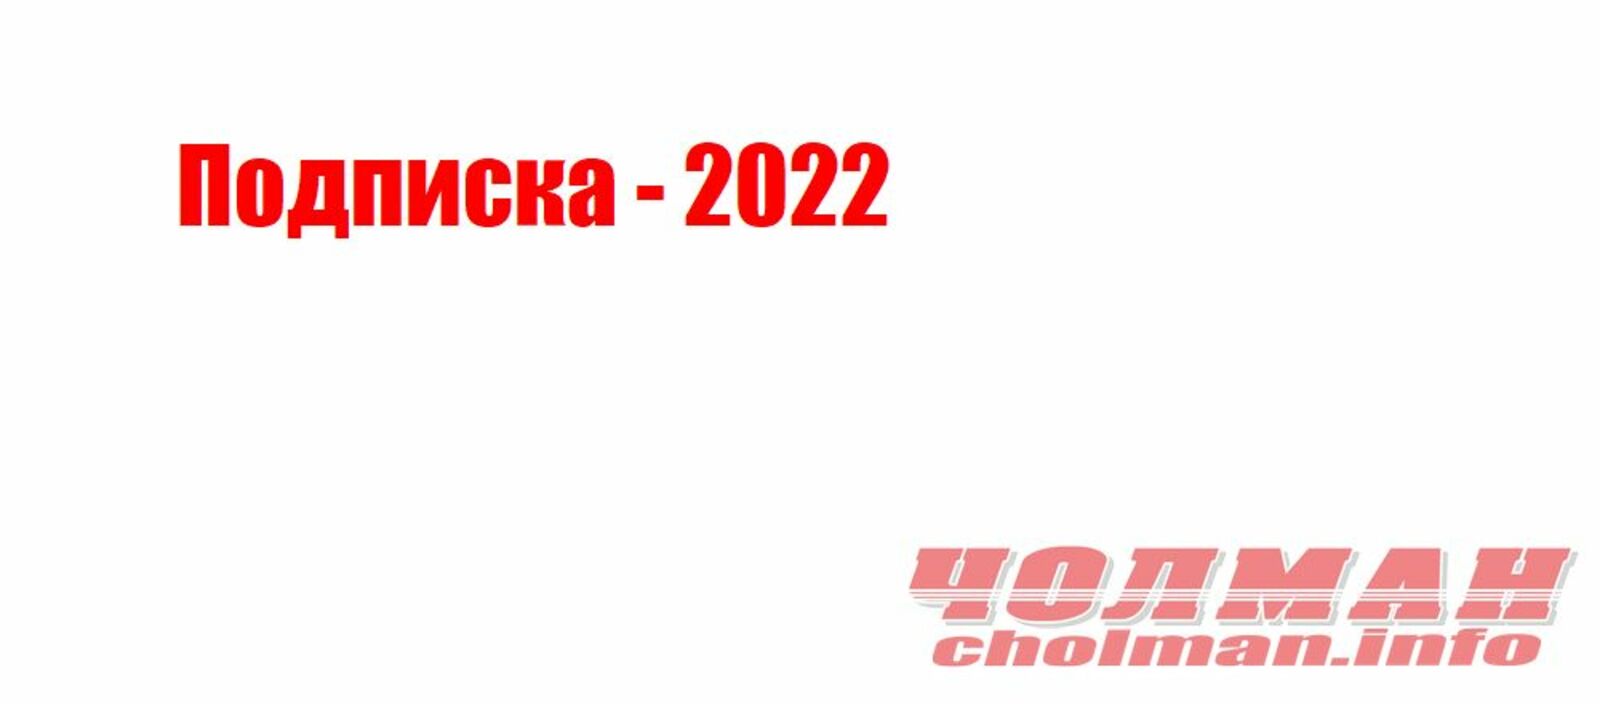 Подписка - 2022